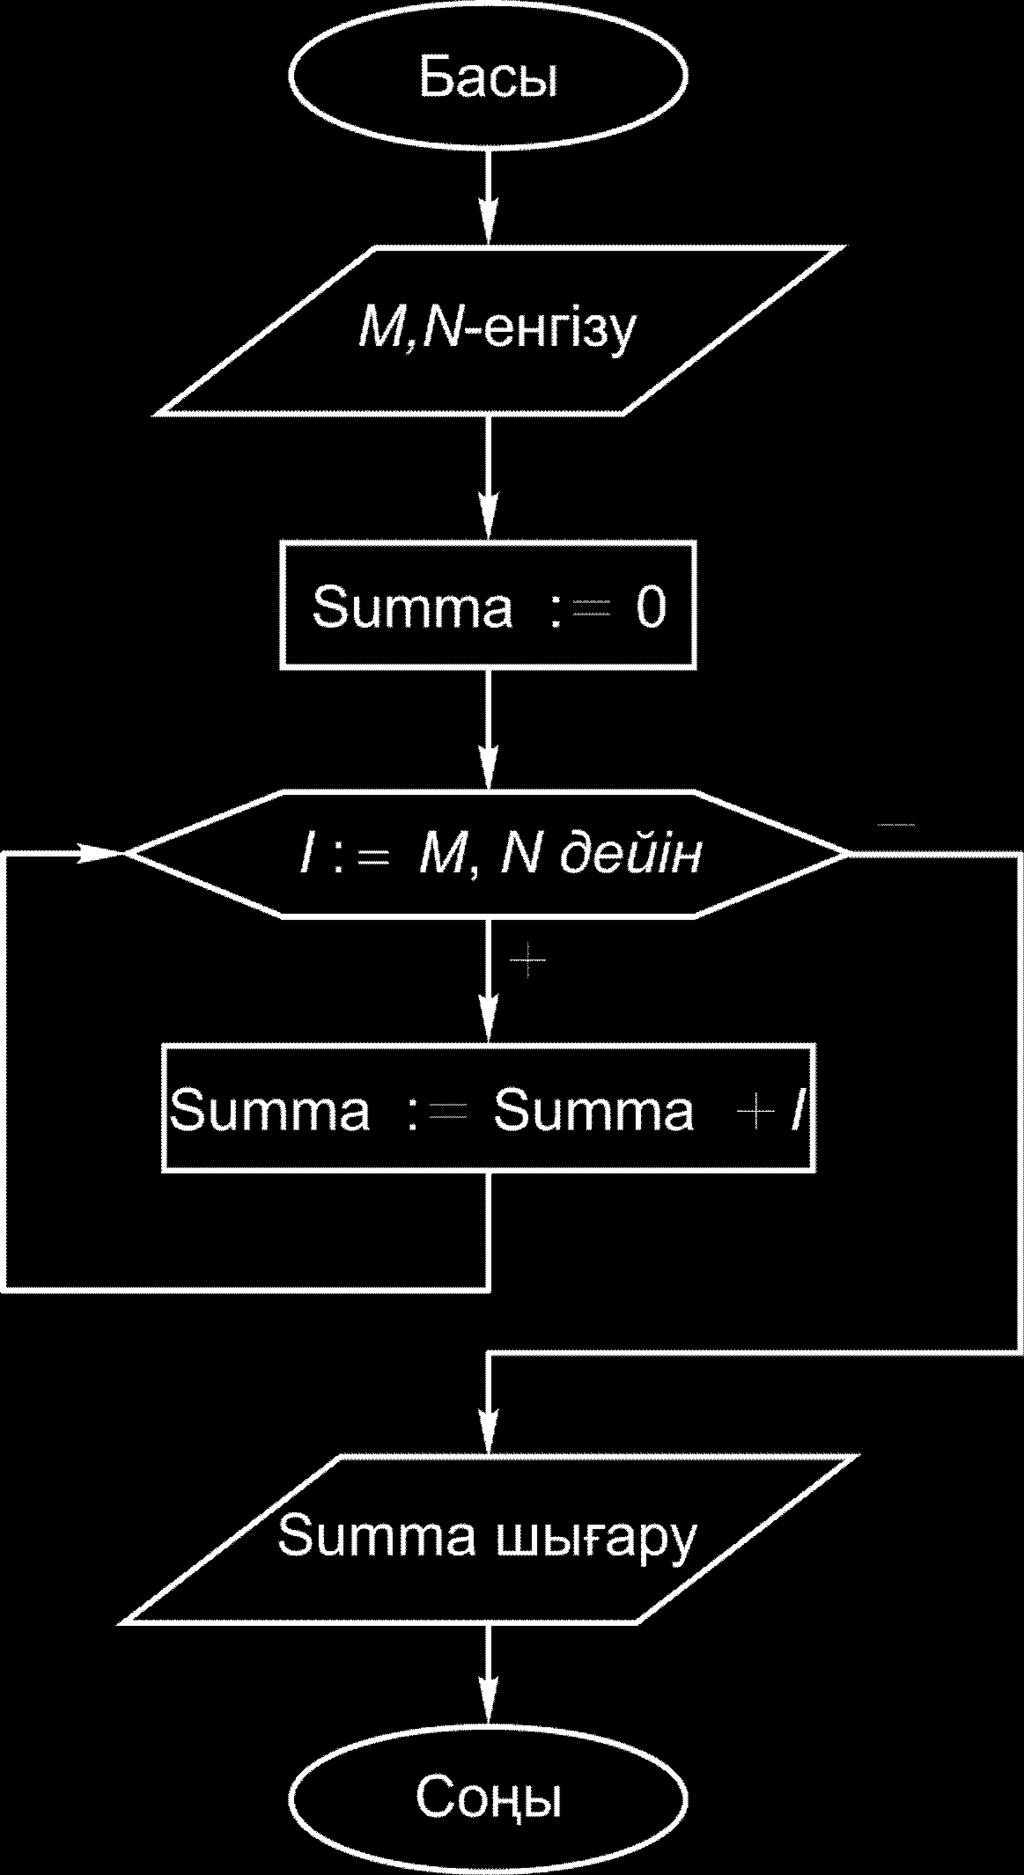 W r i t e ( ' M = ' ) ; R e a d L n ( M ) ; W r i t e ( ' N = ' ) ; R e a d L n ( N ) ; Summa := 0; I := M; While I <= N Do Summa := Summa + I; I := S u c c ( I ) W r i t e L n ( ' Қ о с ы н д ы т е